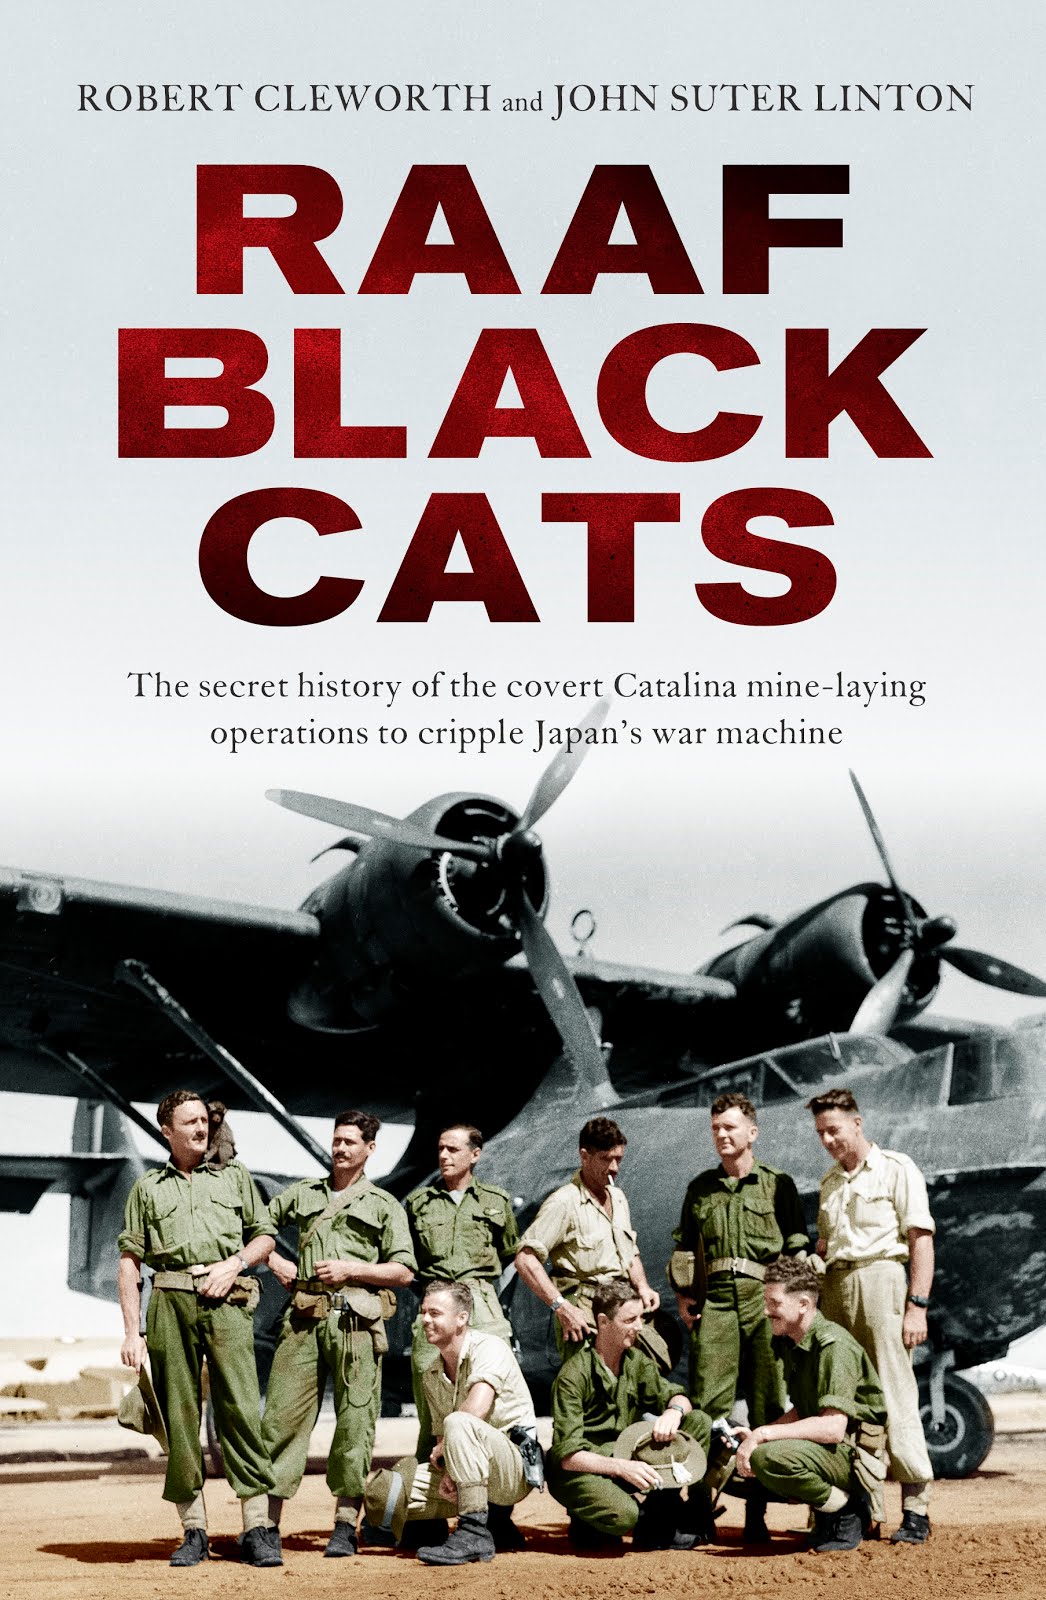 RAAF Black Cats